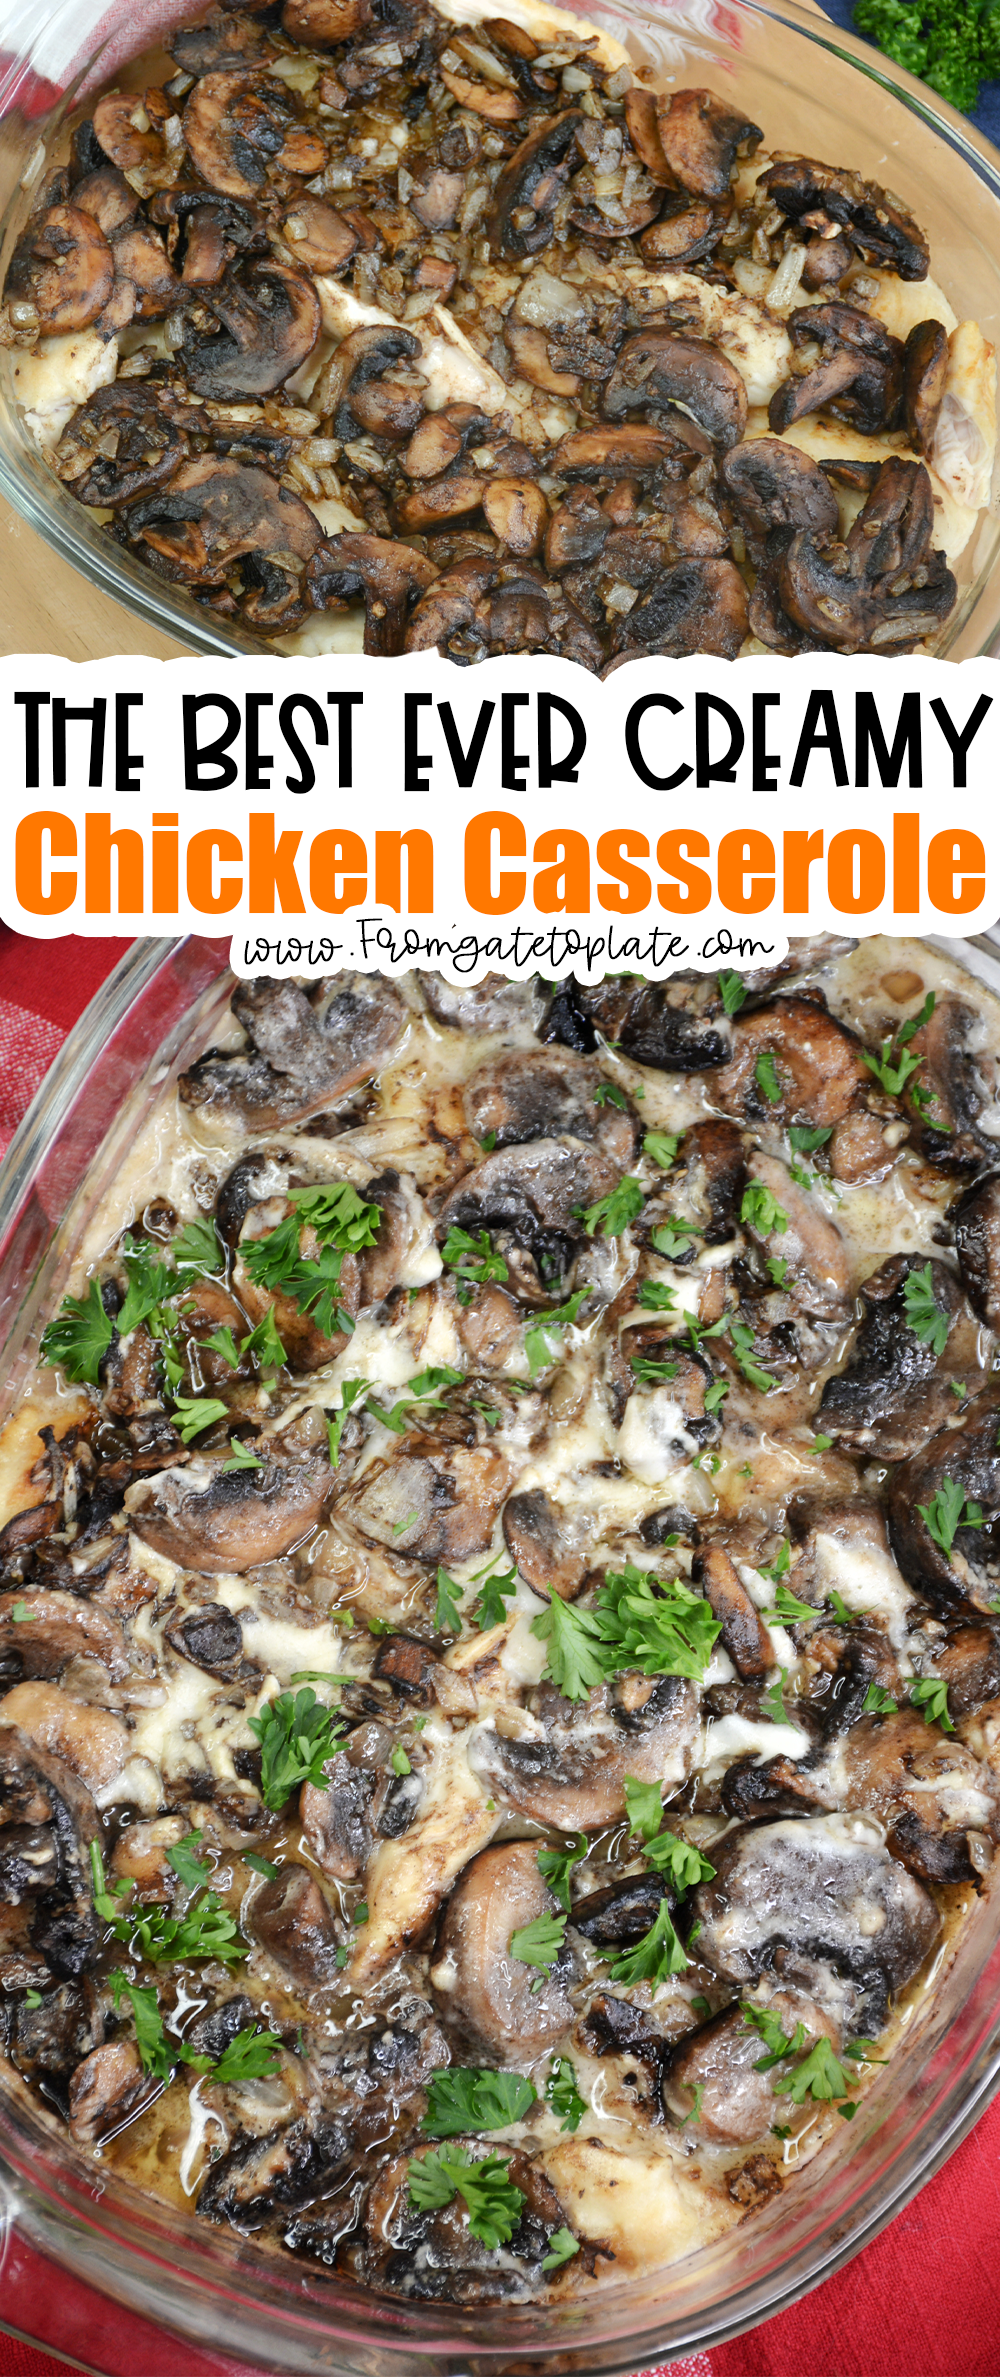 Creamy Chicken Casserole Recipe